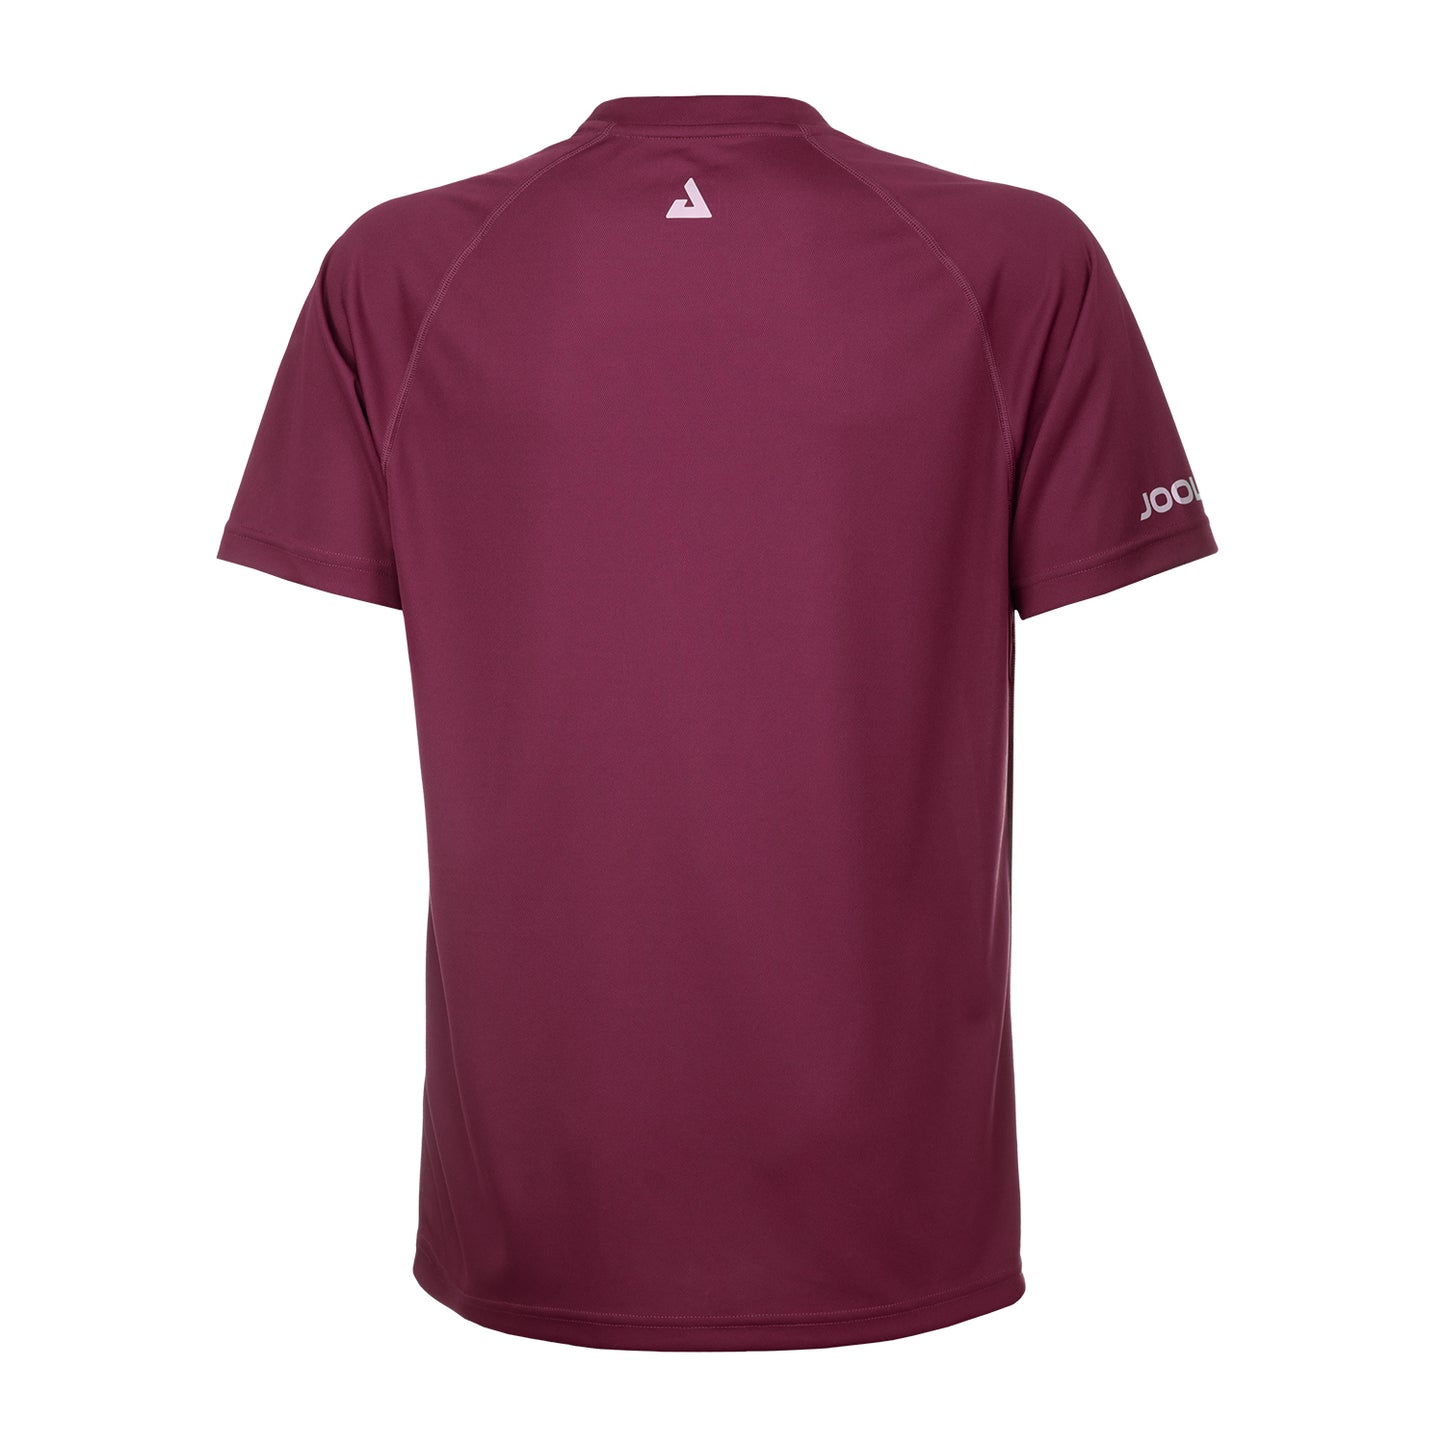 Joola Shirt Airform Bordeaux